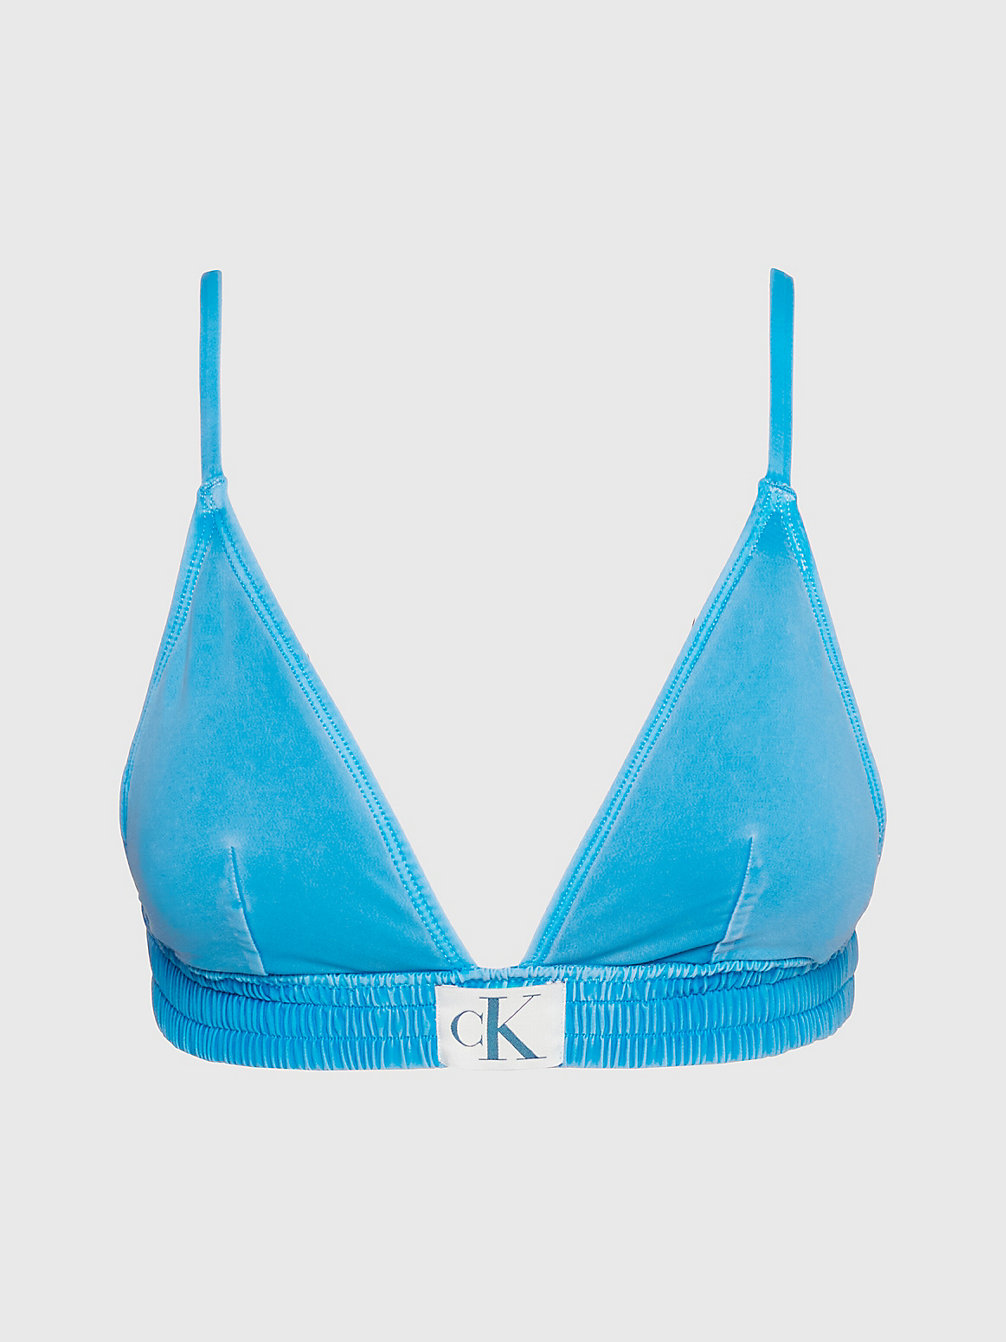 UNITY BLUE > Triangel Bikinitop - CK Authentic > undefined dames - Calvin Klein